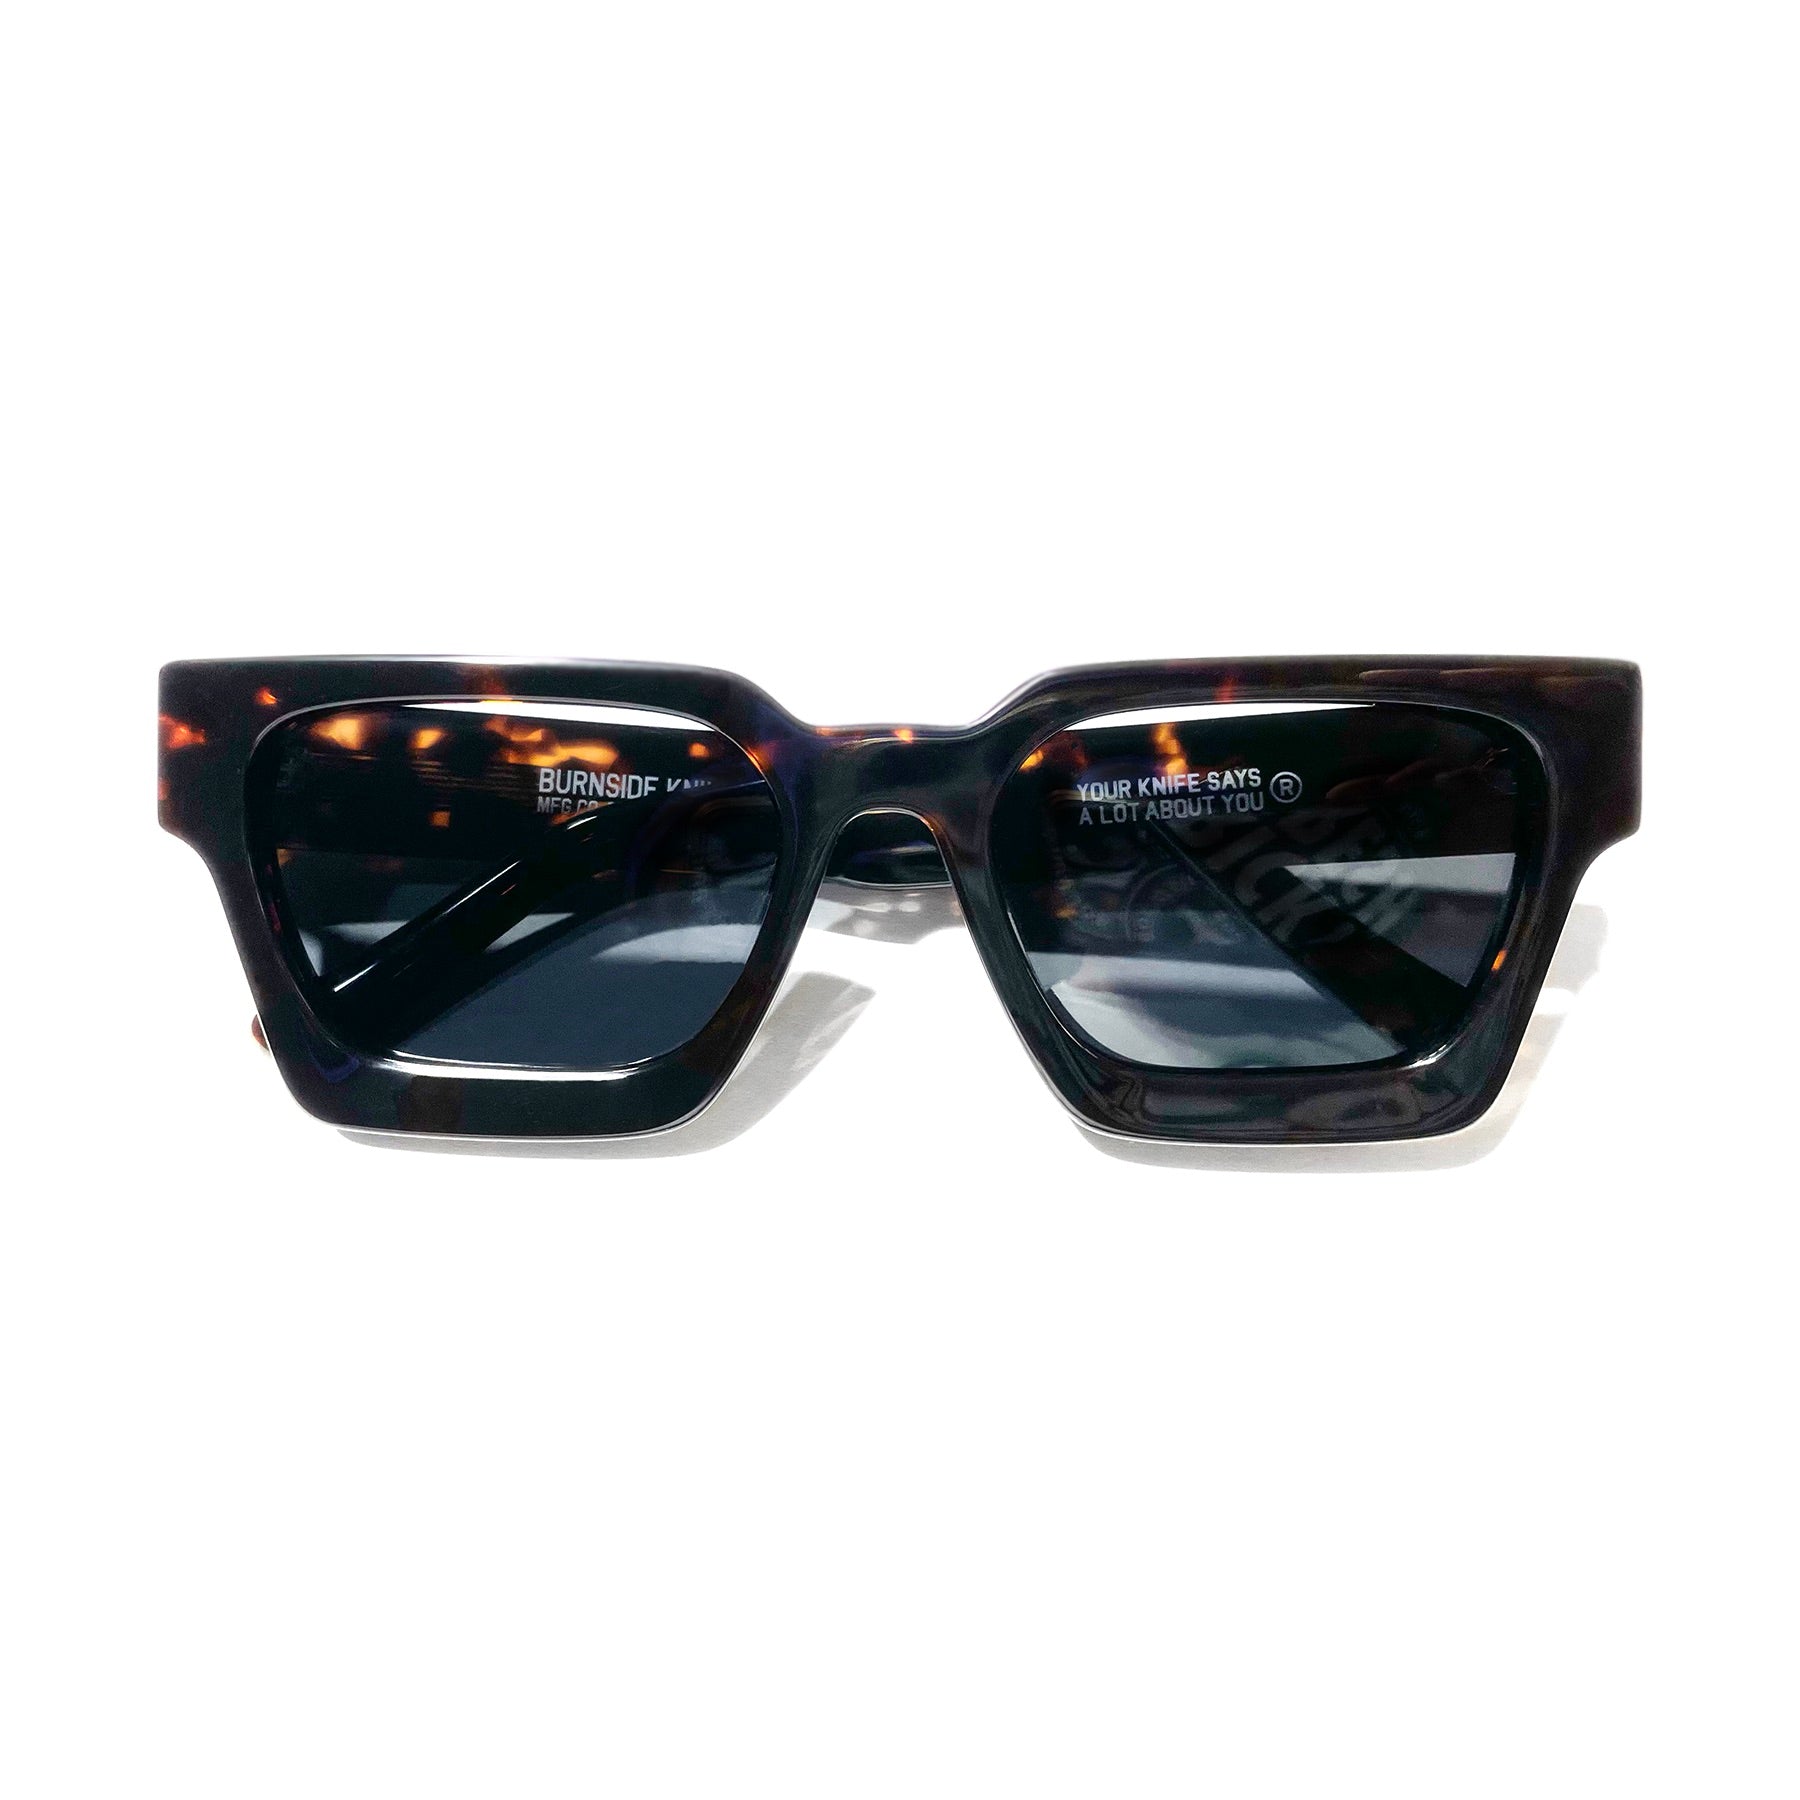 LOUIS VUITTON eyeglass sunglass microfiber cloth